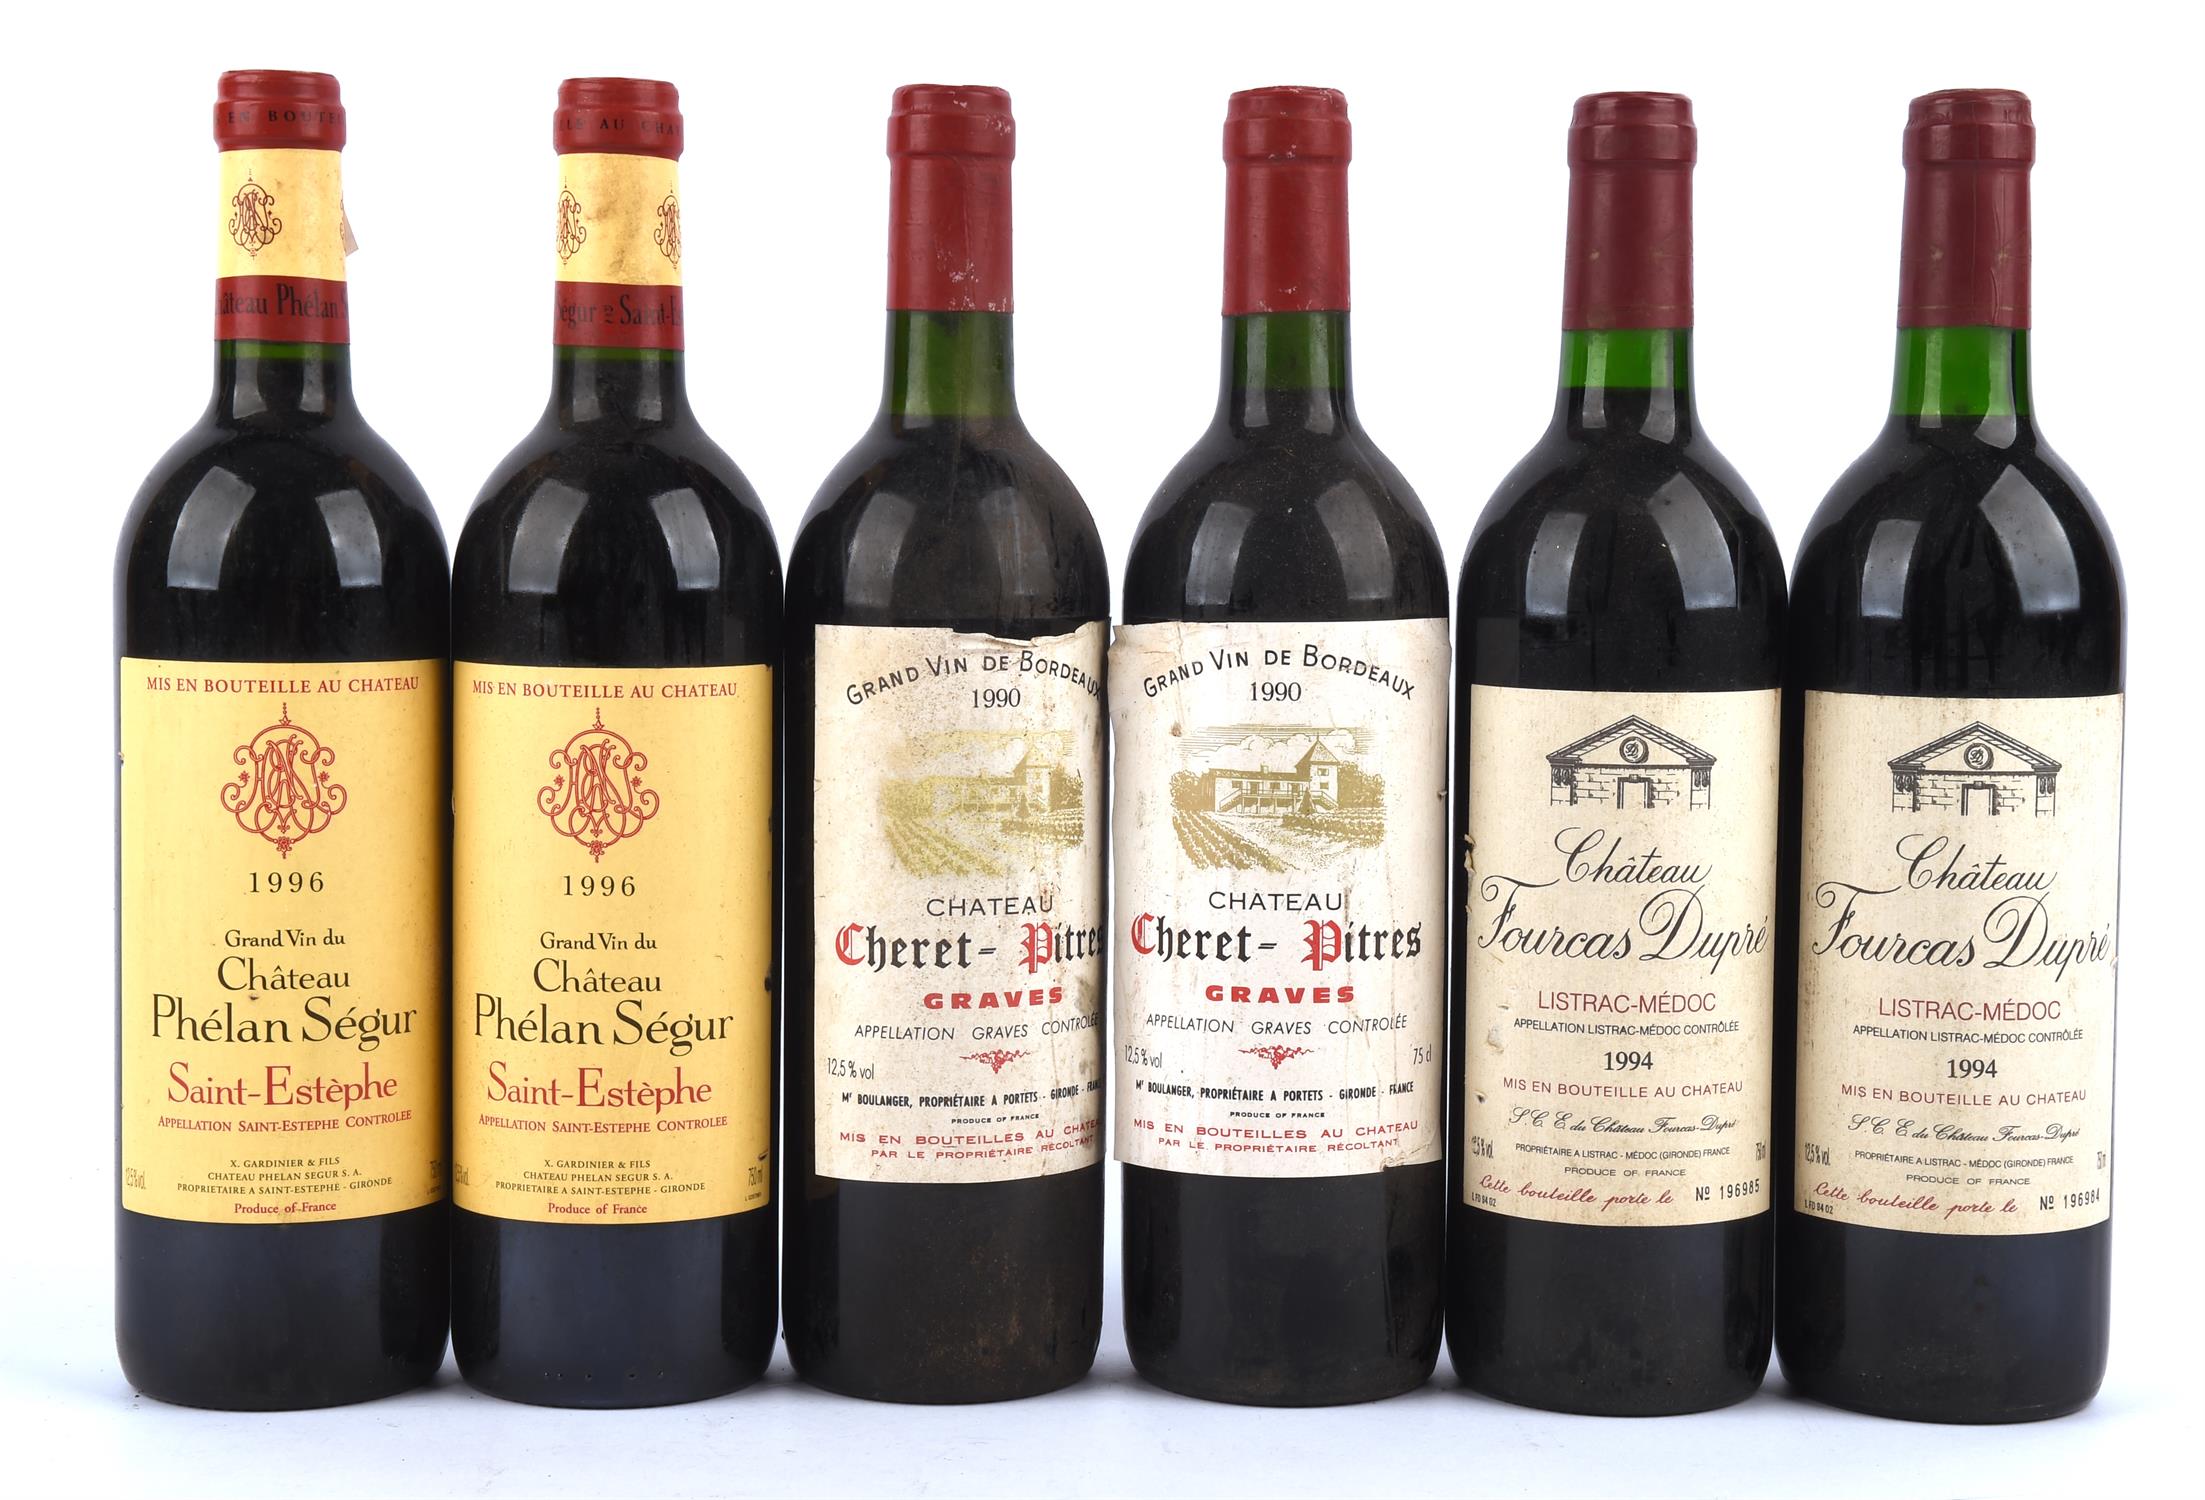 Bordeaux wines, Chateau Fourcas Dupre Listrac Medoc 1994, 2 bottles, Chateau Cheret Pitres Graves